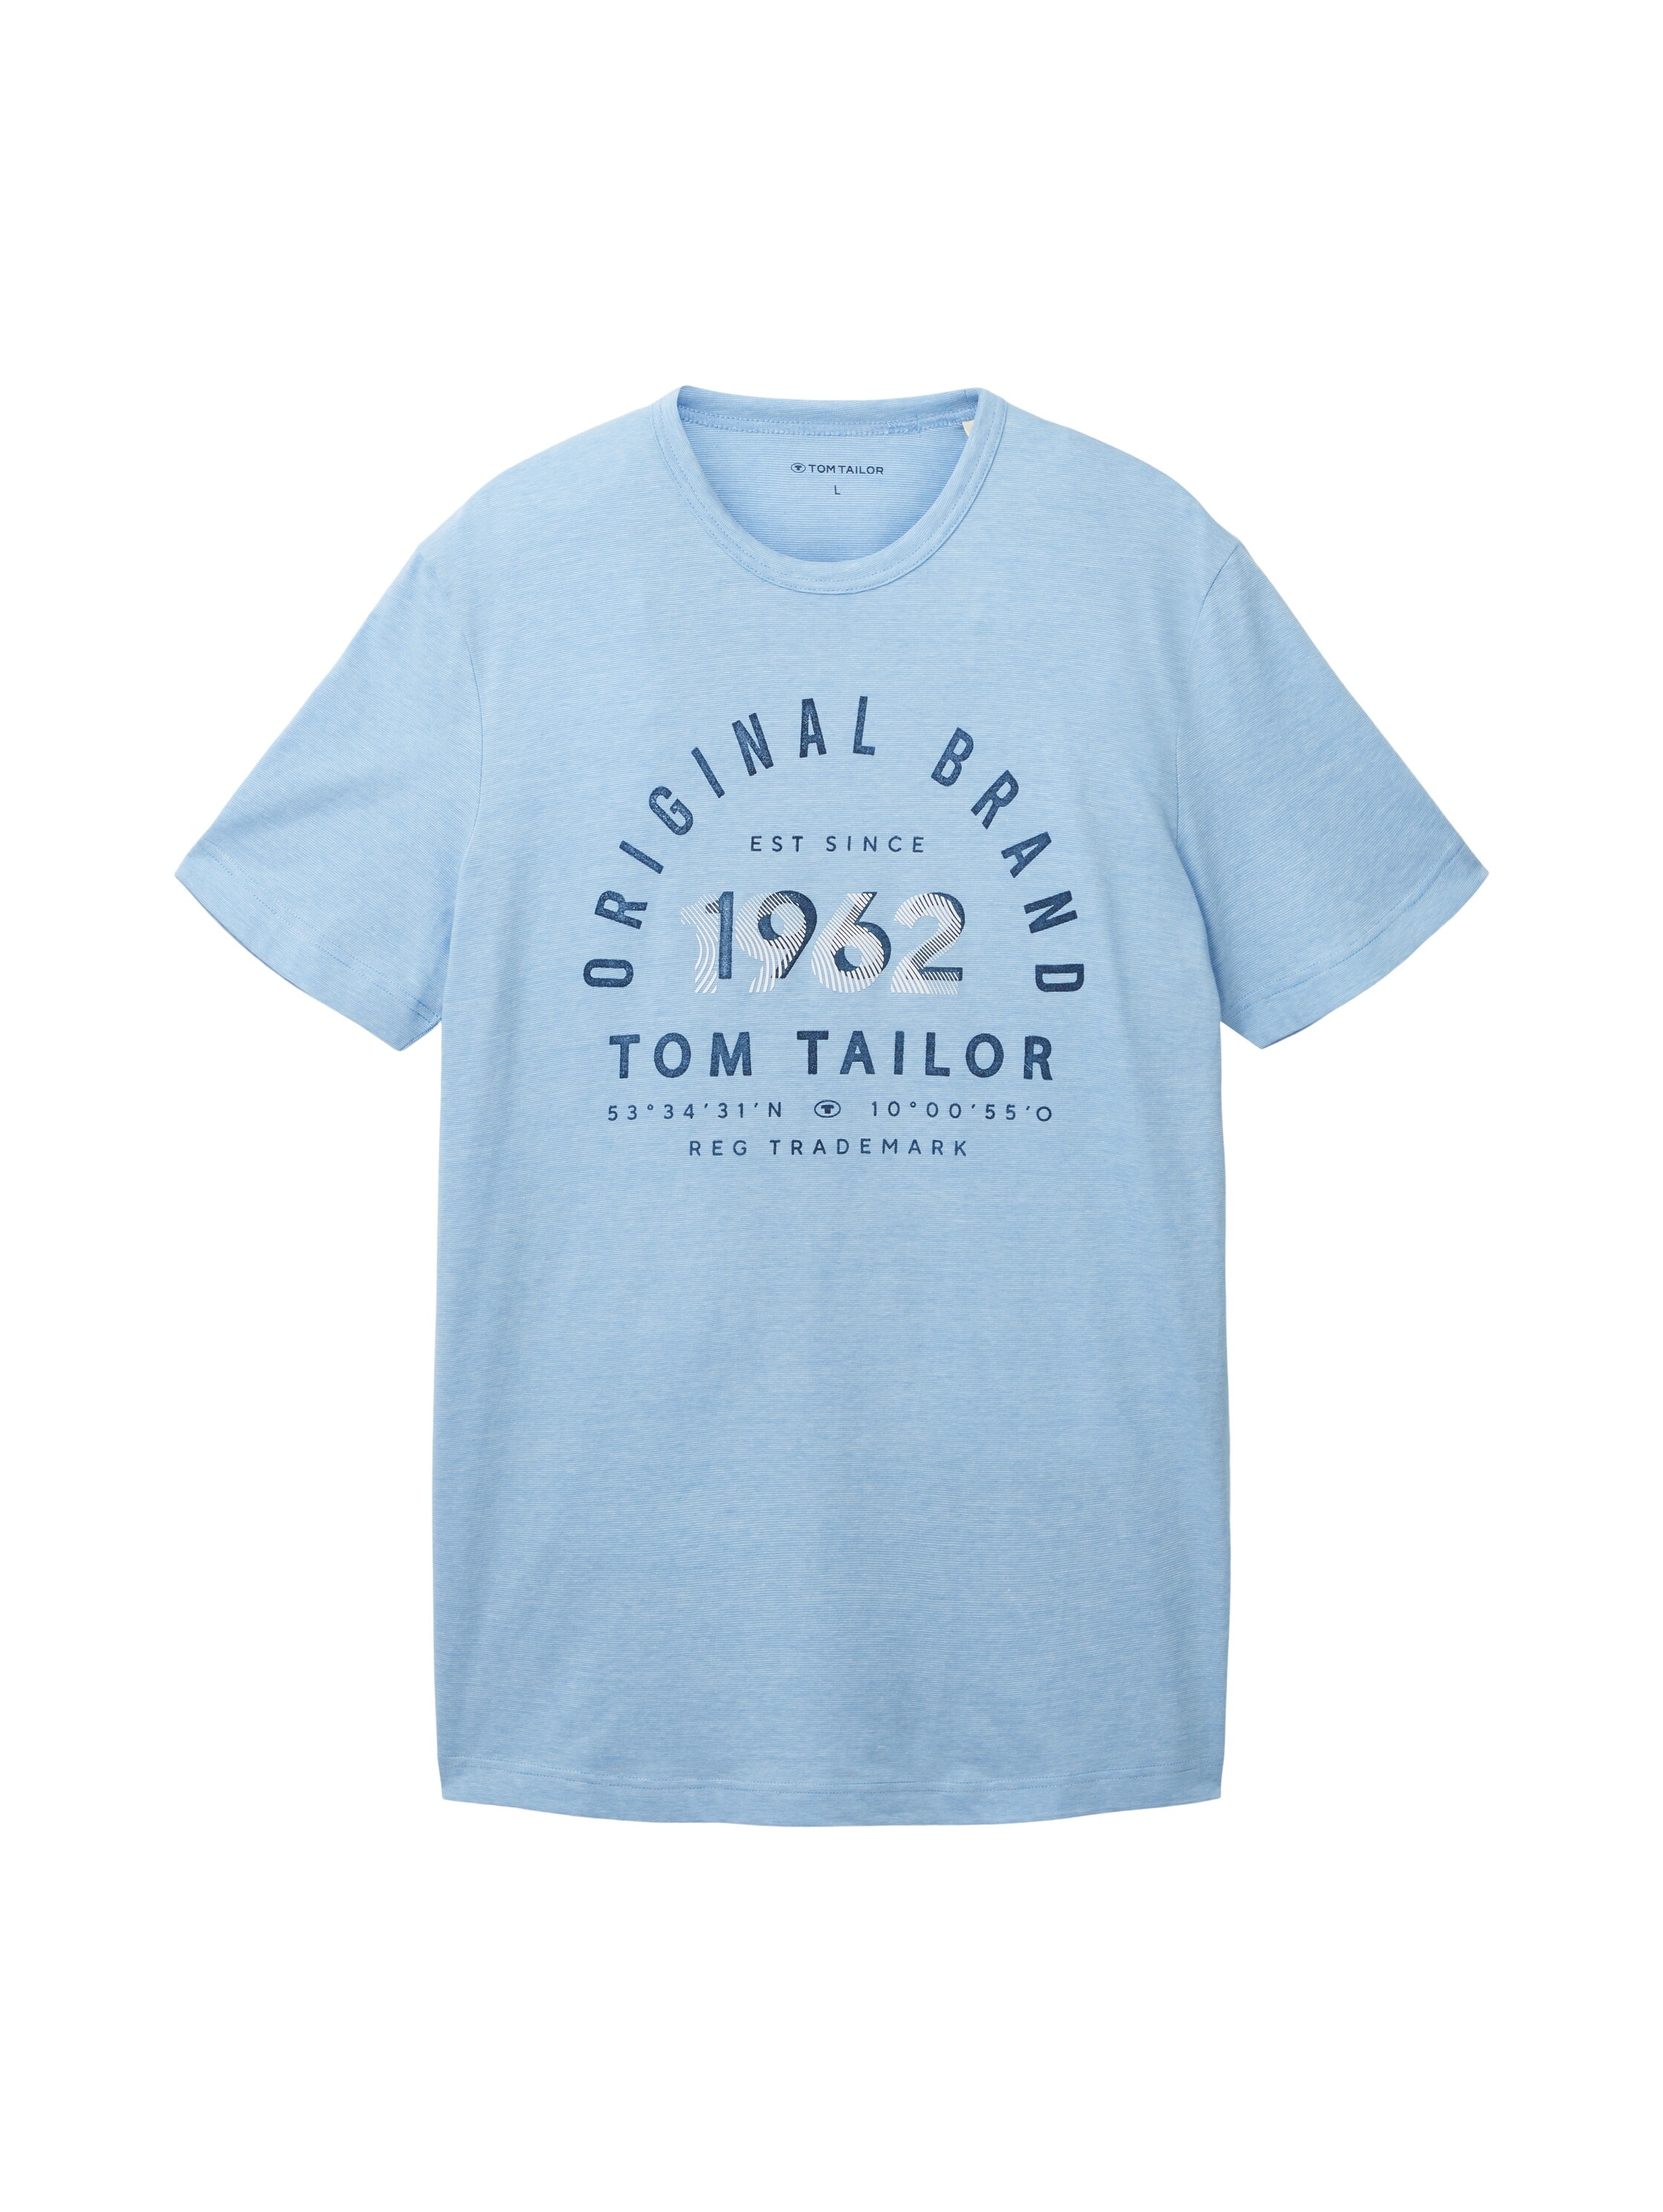 Rundhalsausschnitt bei ♕ mit T-Shirt, TOM TAILOR